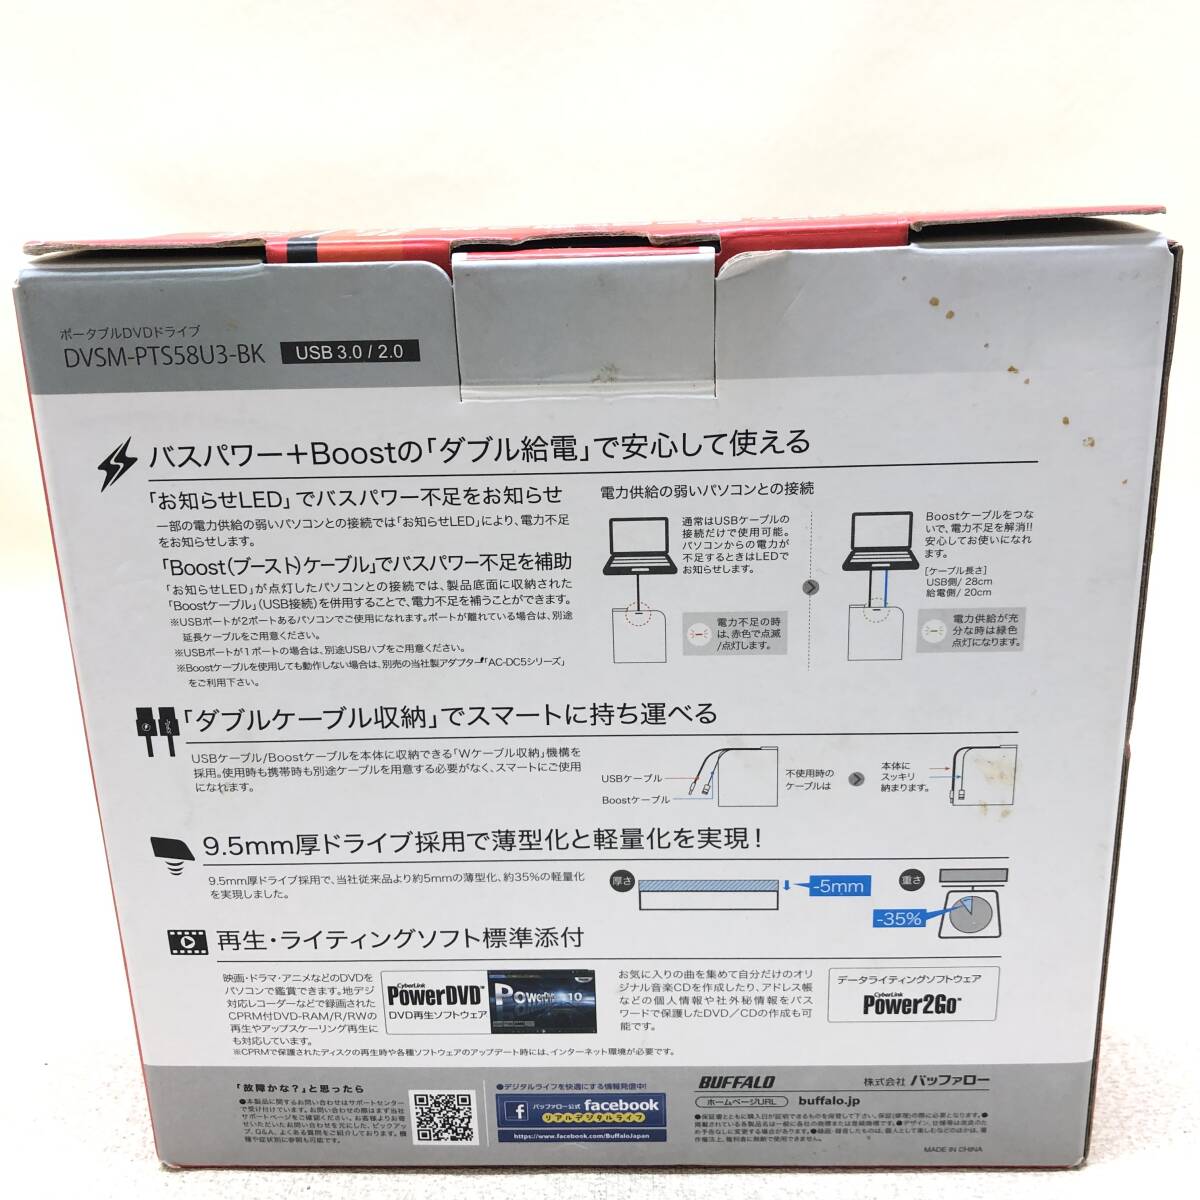 ^BUFFALO портативный DVD Drive DVSM-PTS58U3 USB3.0 соответствует воспроизведение оборудование PC электризация проверка settled текущее состояние товар ^R73372